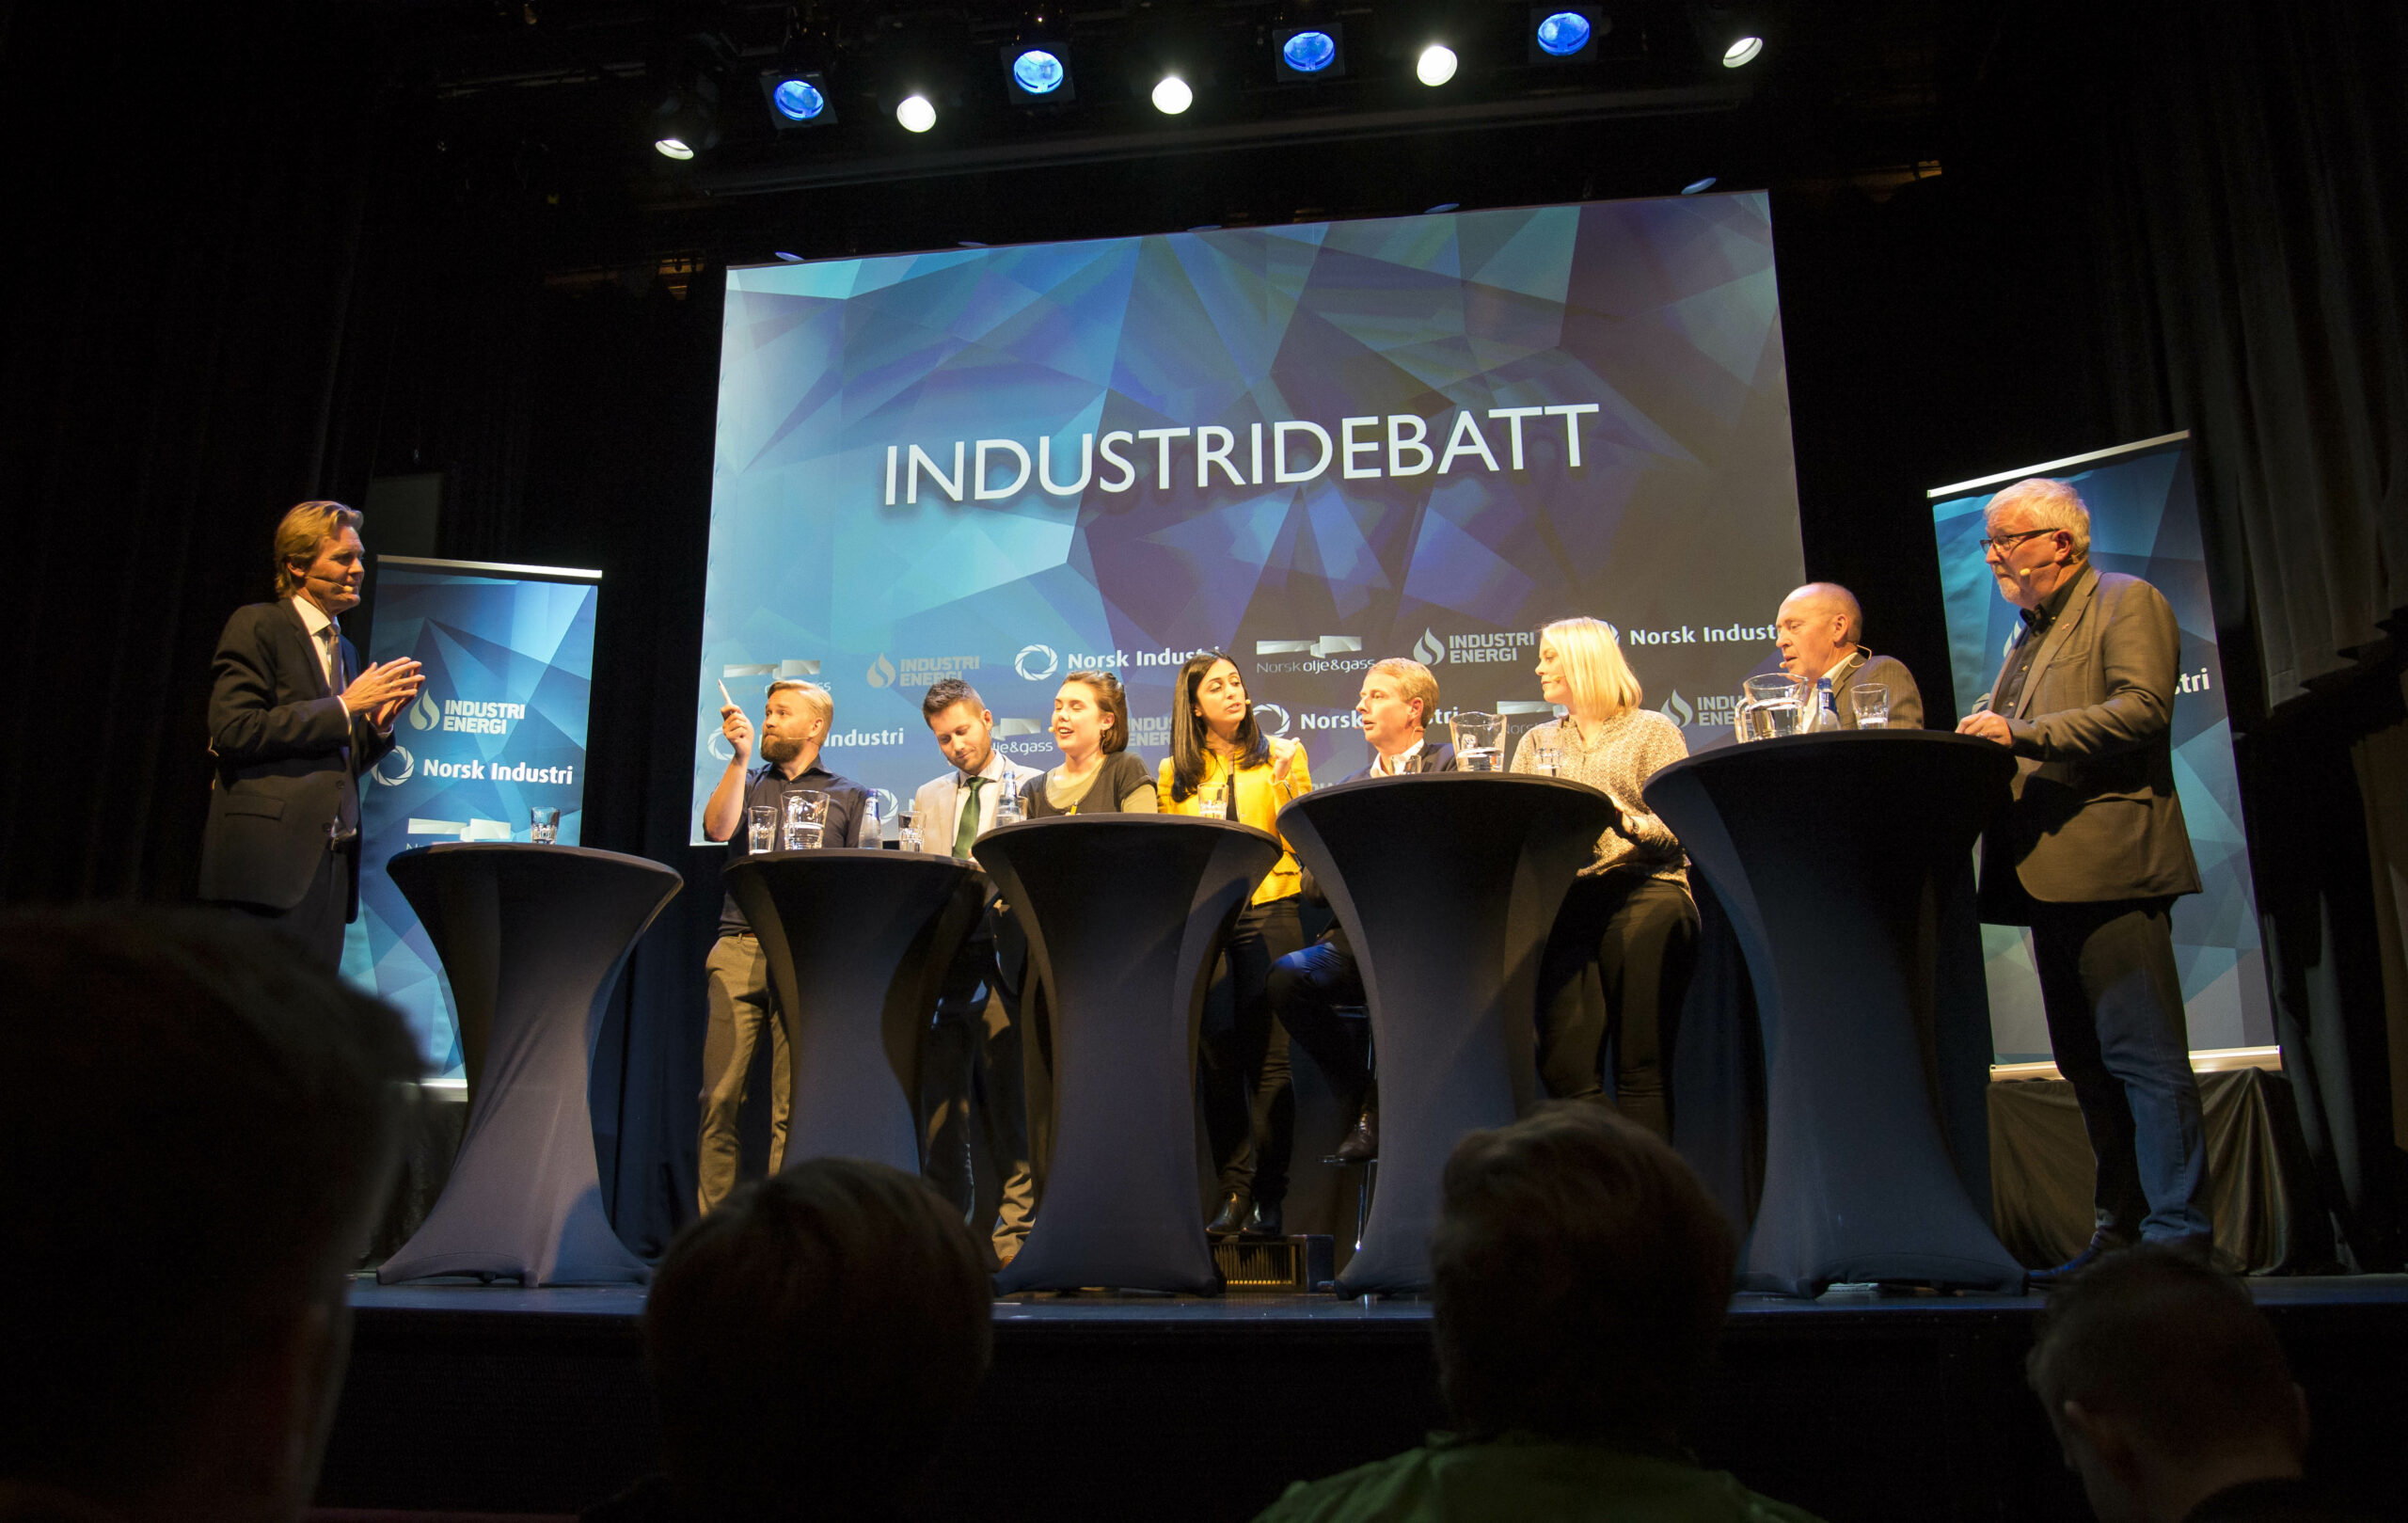 Valgkampens viktigste debatt om oljeindustrien ble holdt i Stavanger torsdag kveld.